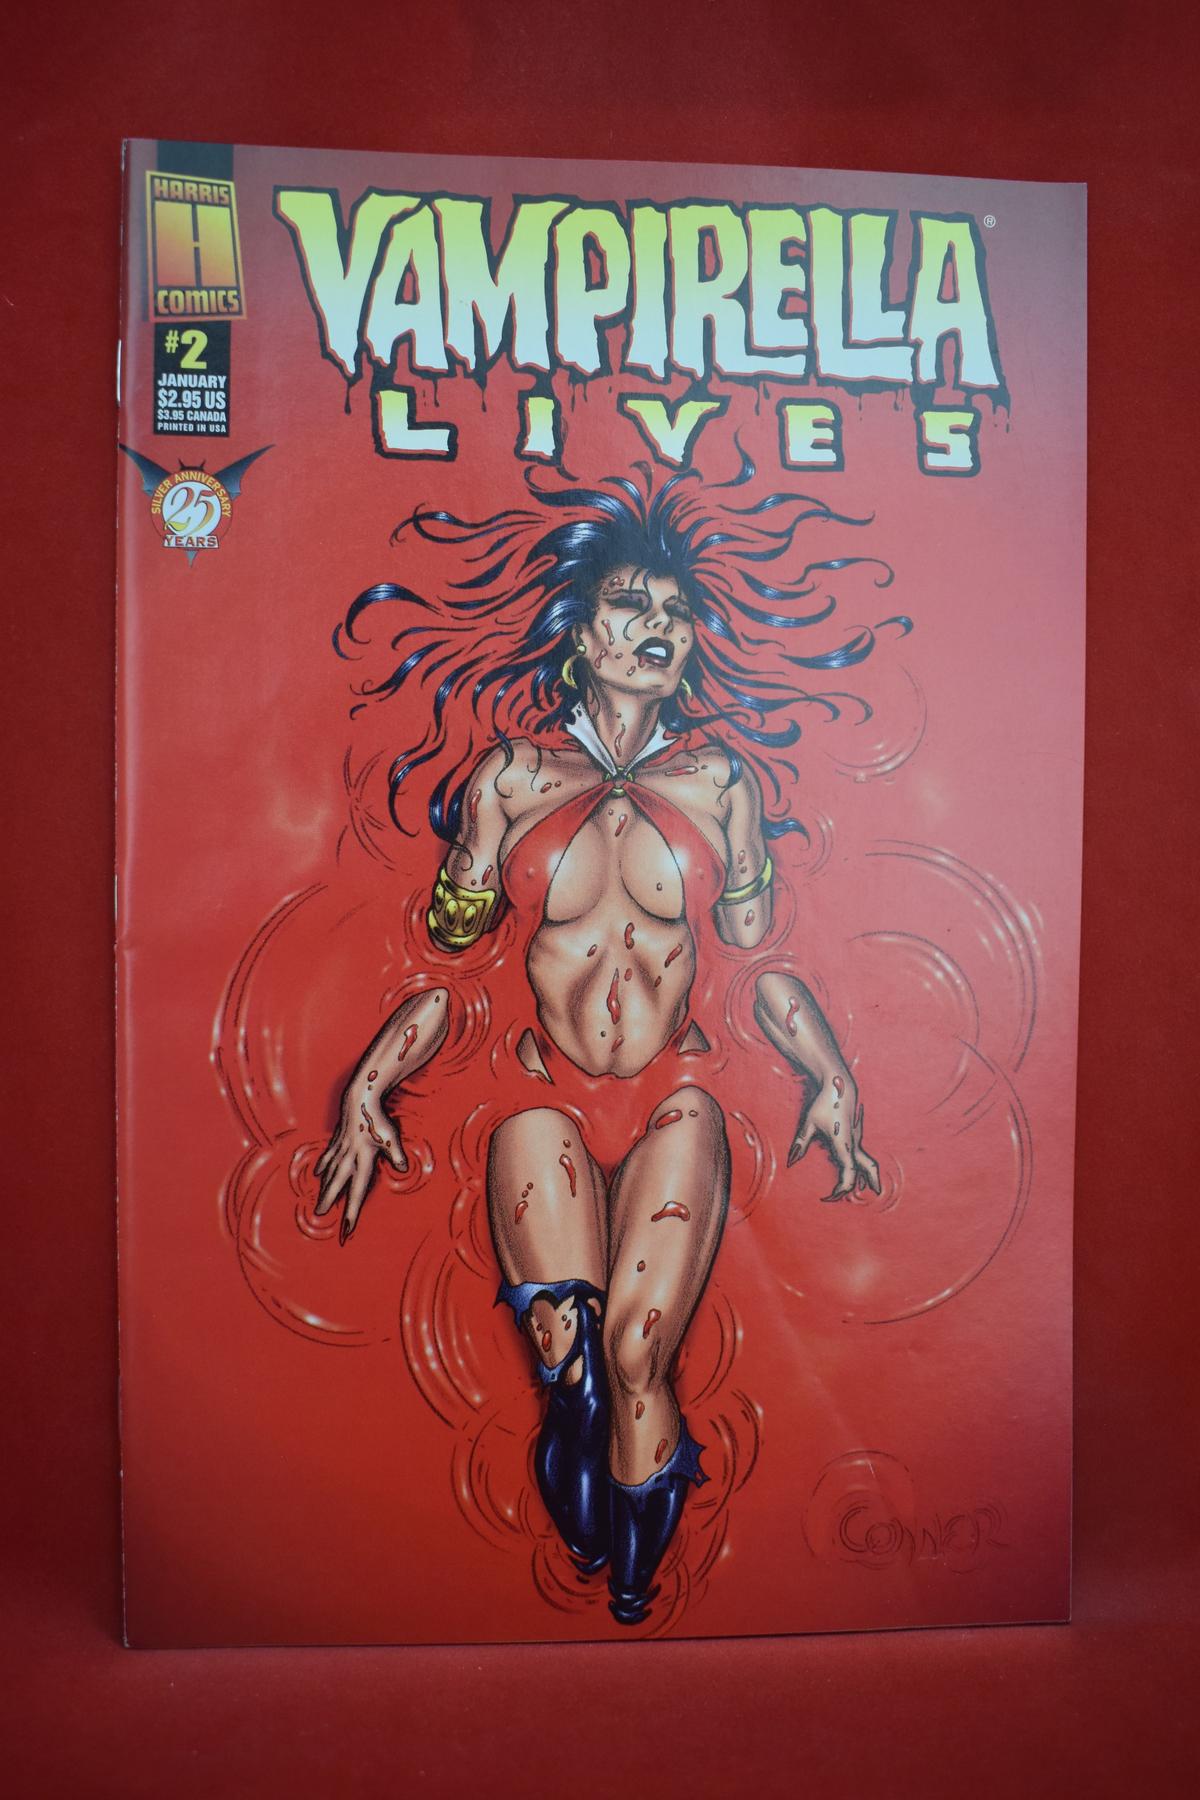 VAMPIRELLA LIVES #2 | AMANDA CONNER COVER ART - HARRIS COMICS